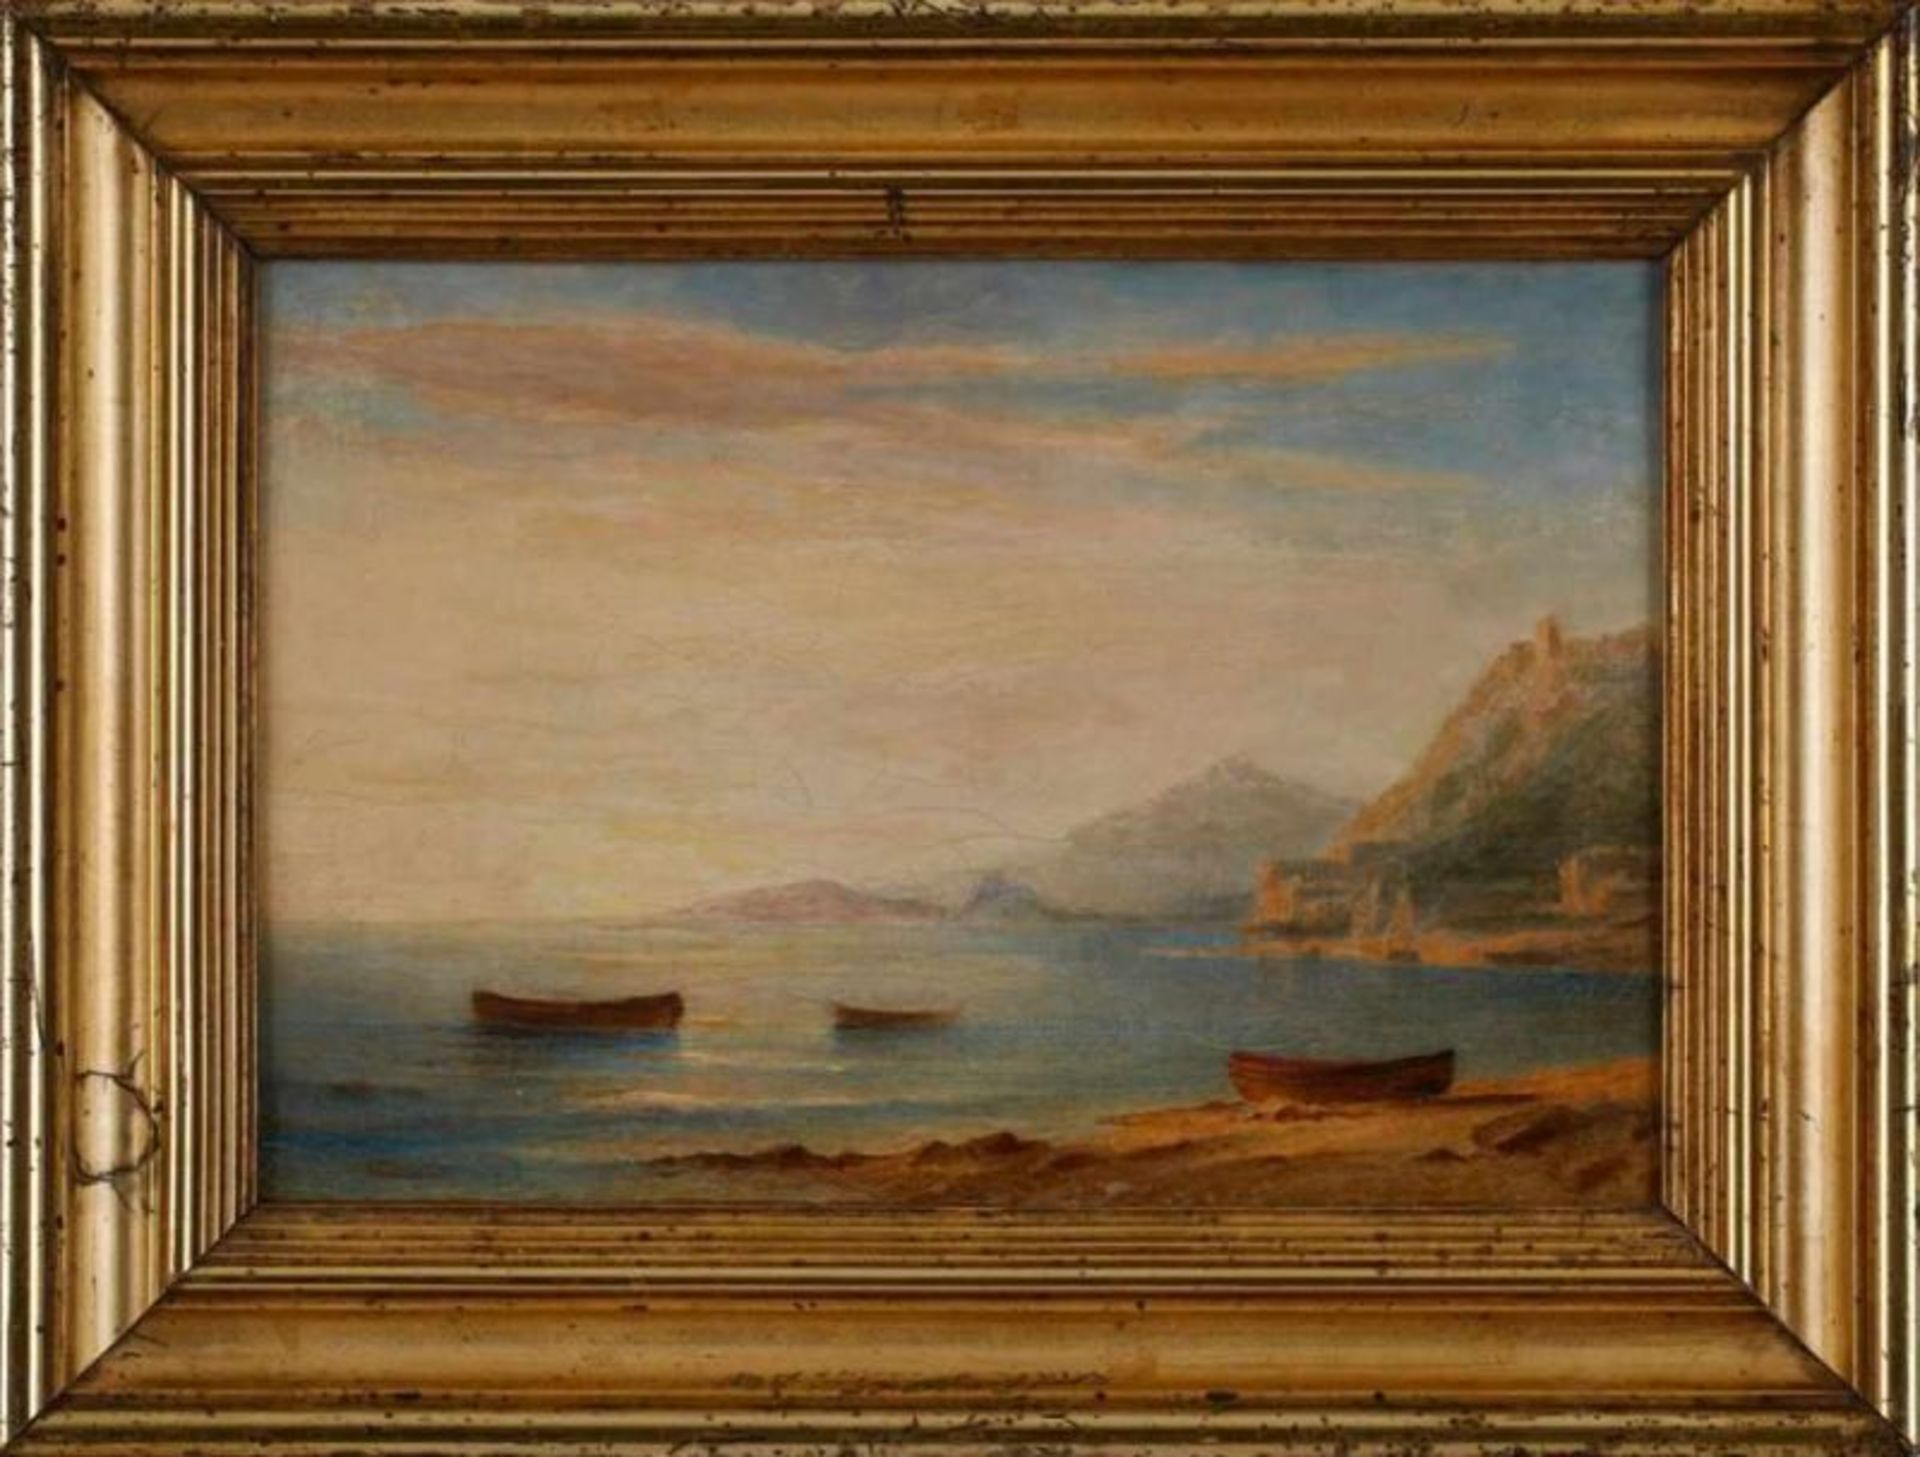 Gemälde/Ölstudie Carl Morgenstern 1811 Frannkfurt - 1893 Frankfurt "Italienische Küstenszene" - Bild 4 aus 6